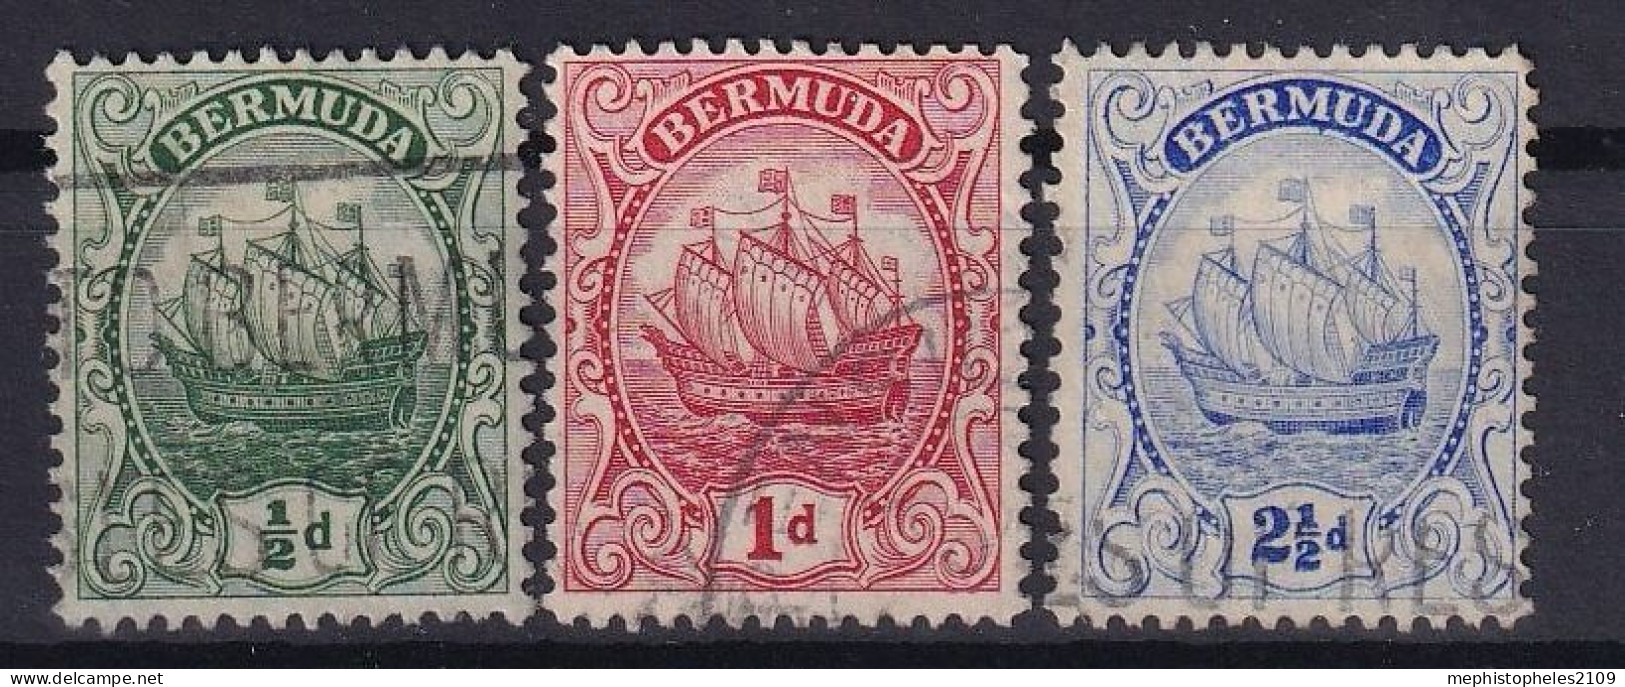 BERMUDA 1922 - Canceled - Sc# 82, 83, 87 - Bermuda